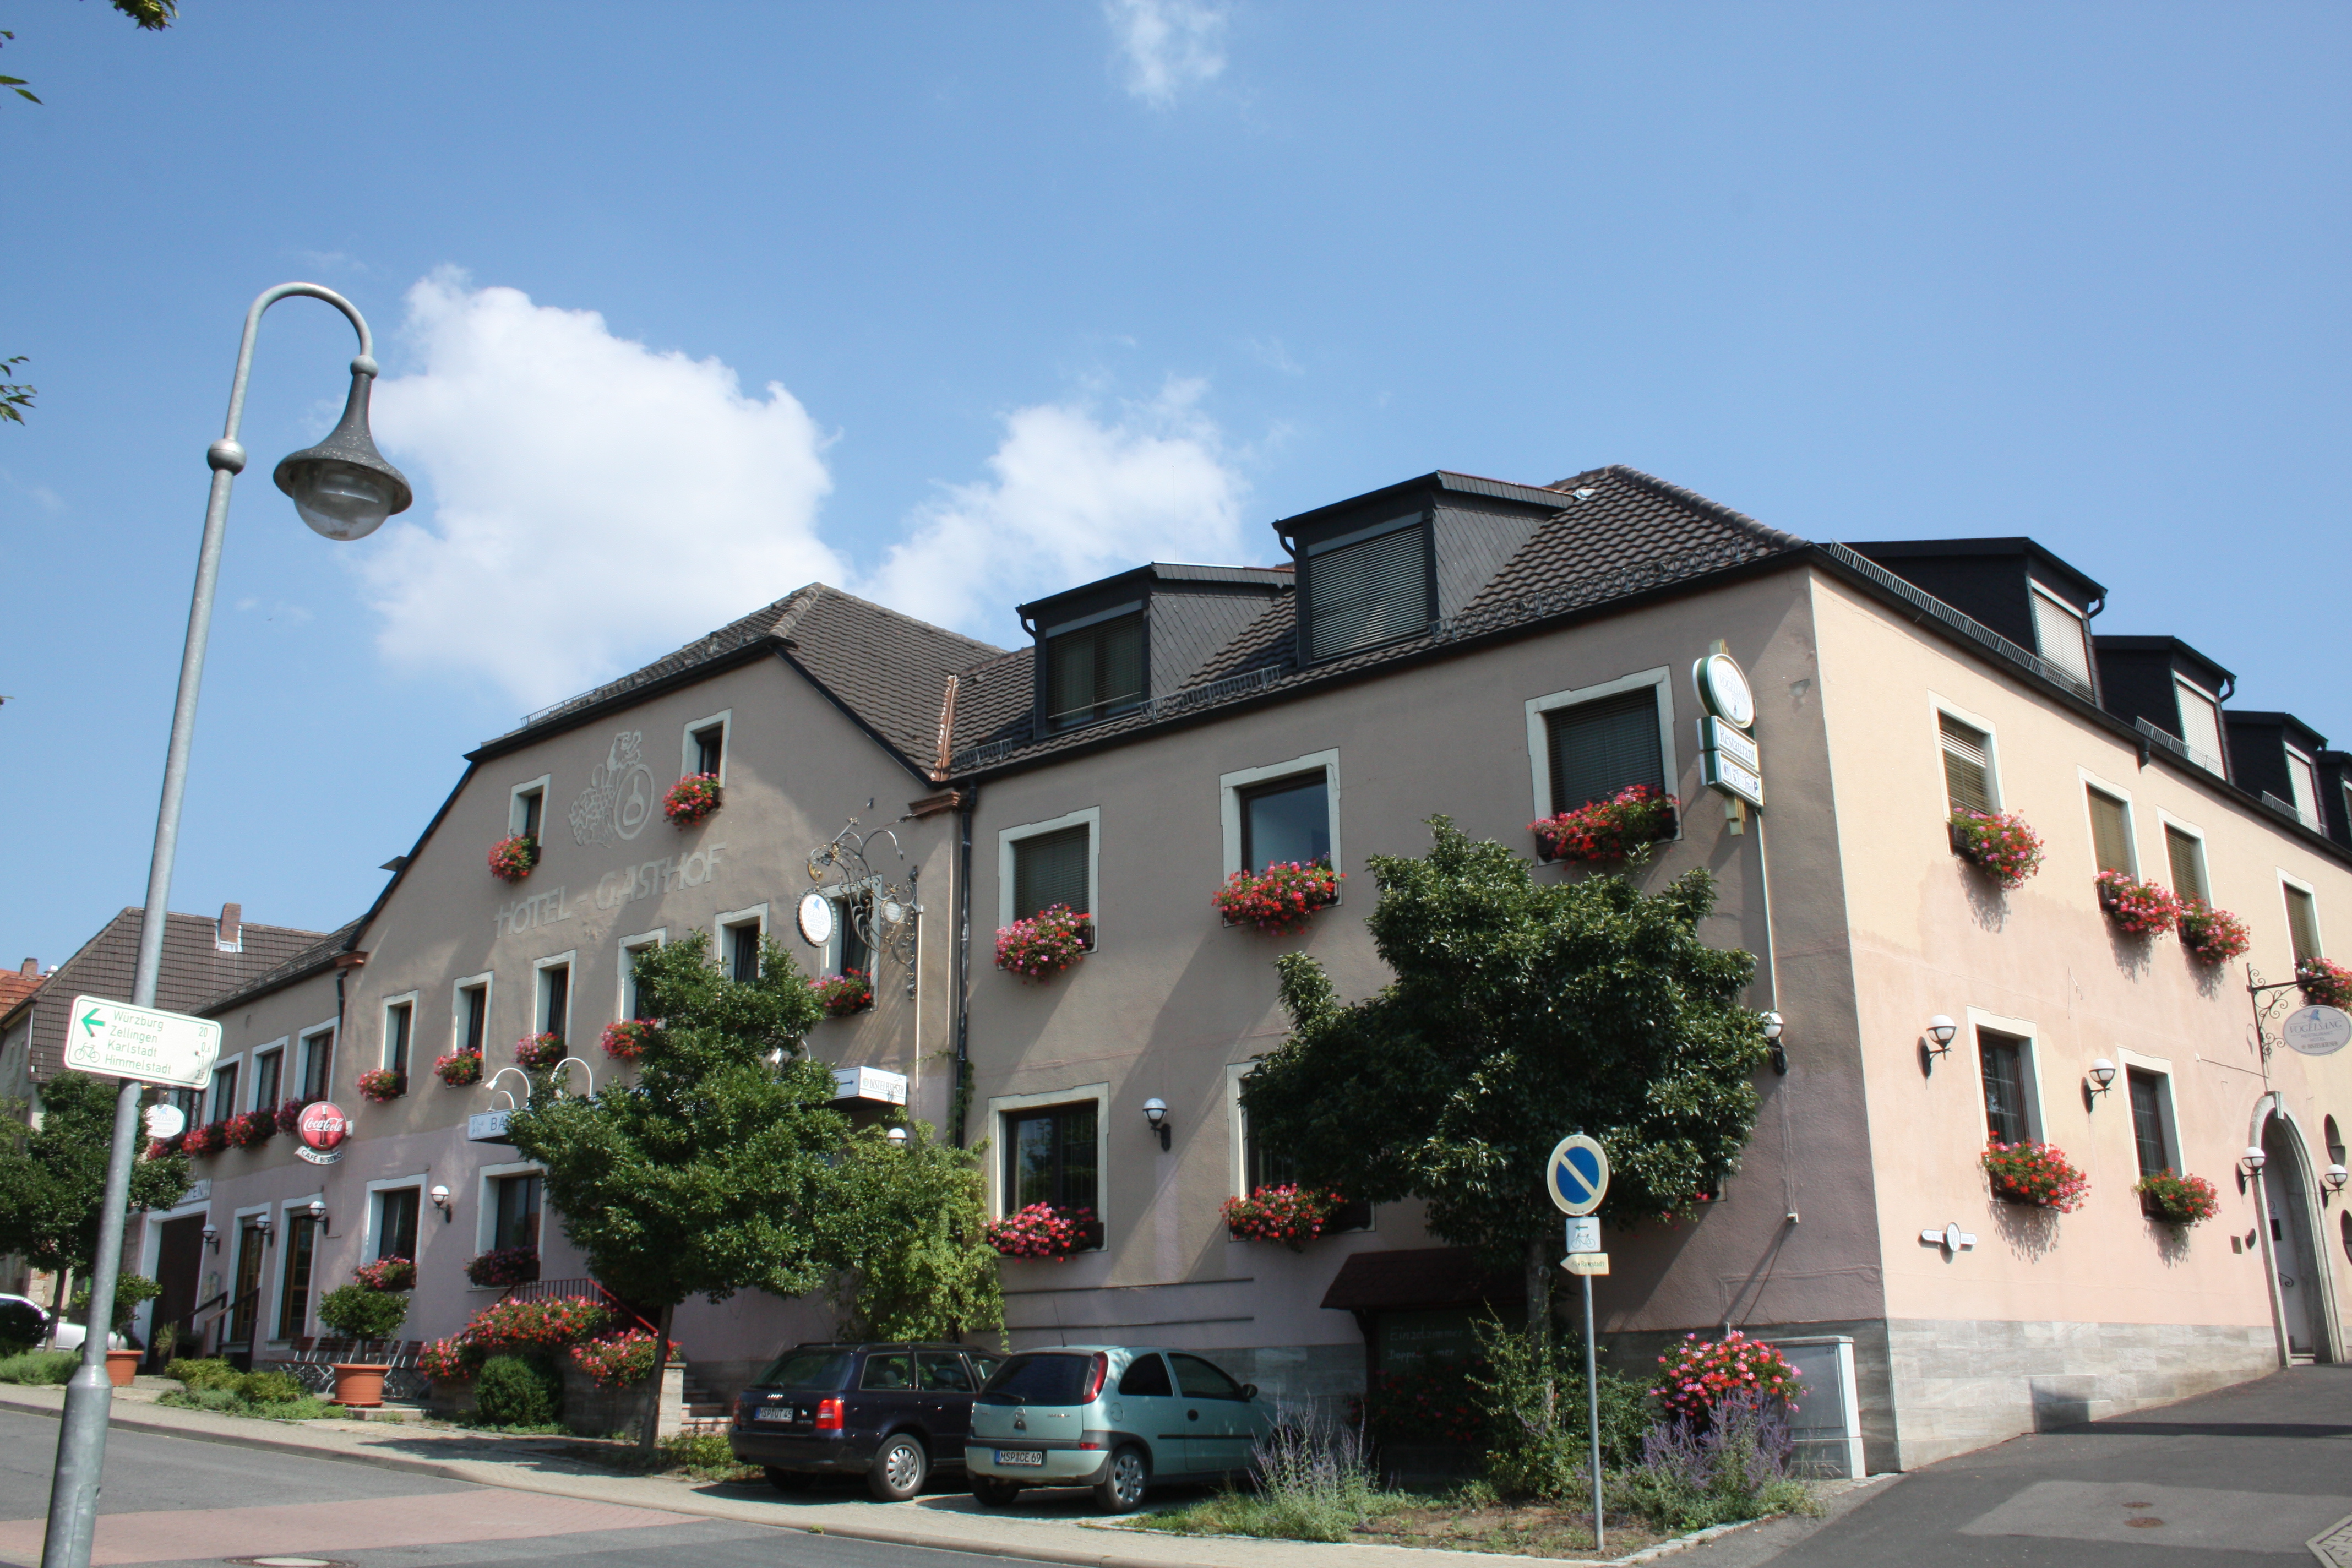 Hotel Vogelsang, Zellingen - Ortsteil Retzbach.